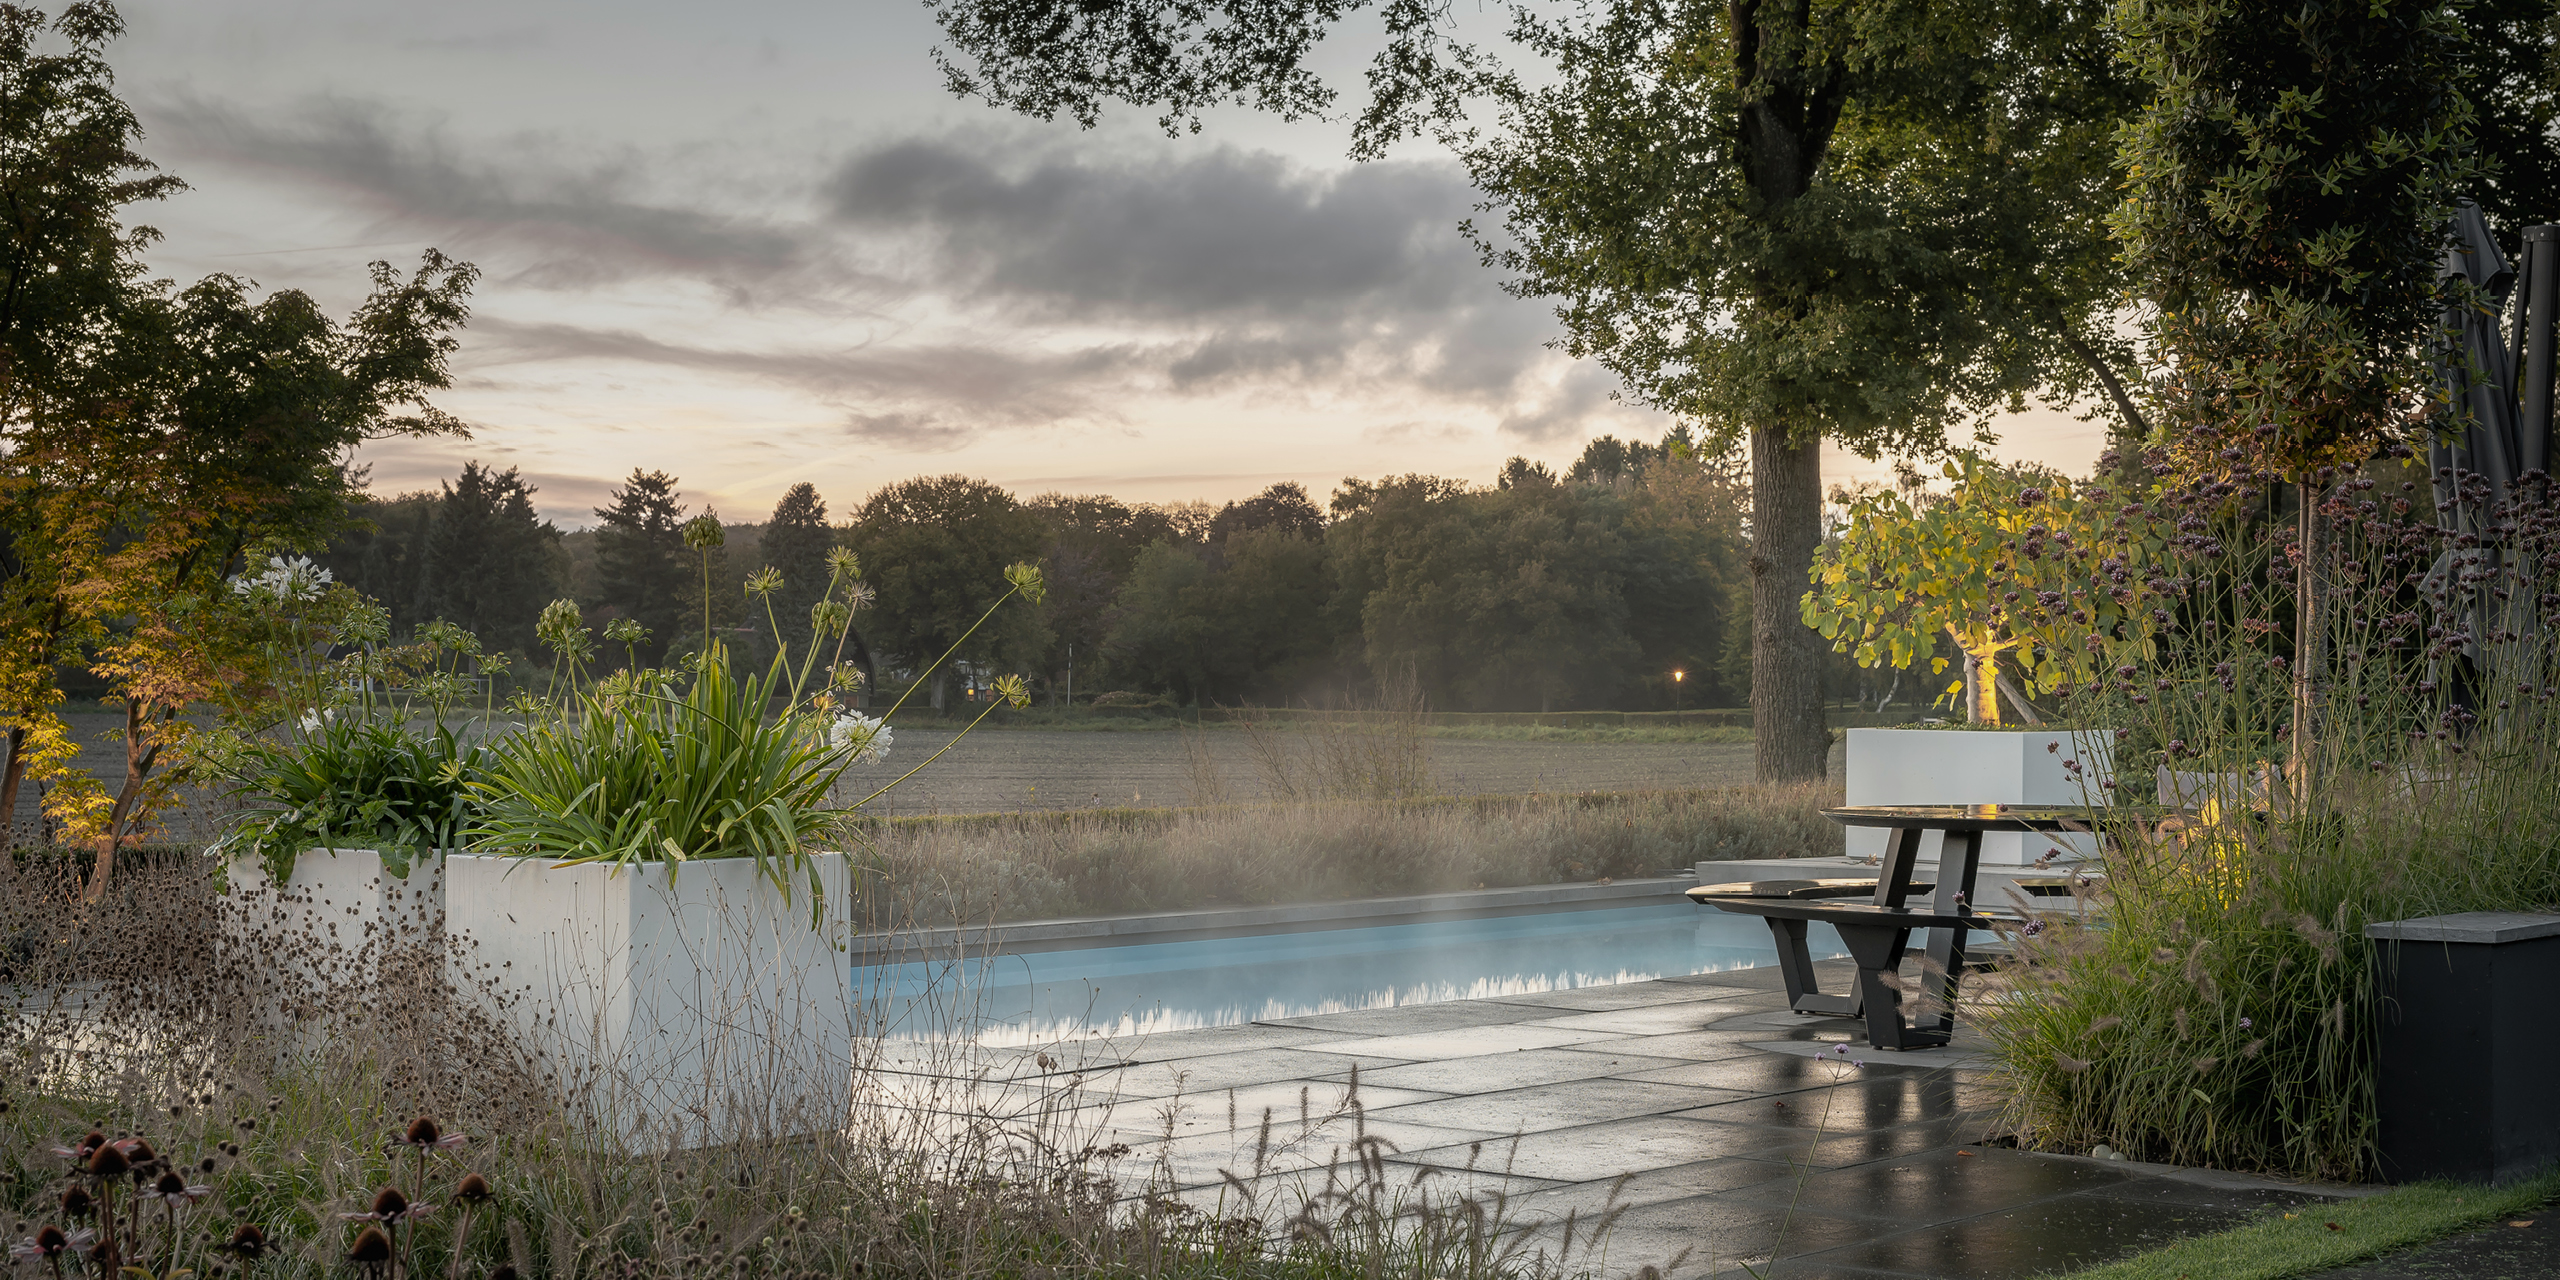 Tuin van Buytengewoon in Hoog Soeren met zwembad, terras, bloembakken, agapanthus en uitzicht op een weiland.